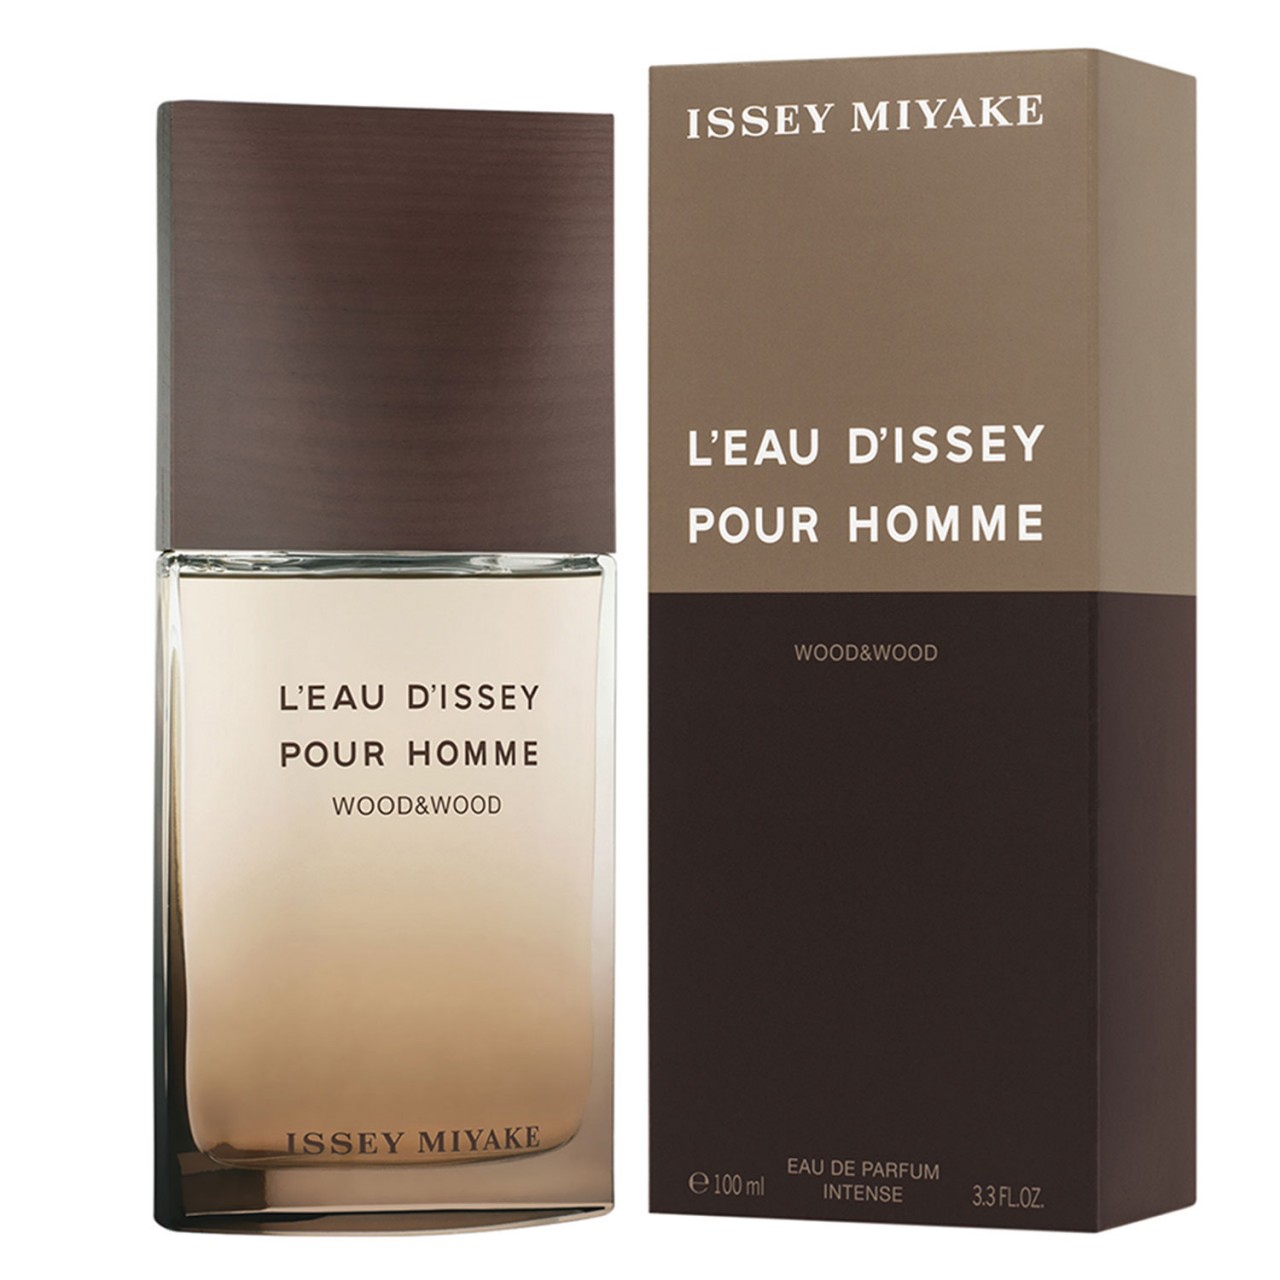 L'Eau D'Issey Pour Homme - Wood & Wood Eau de Parfum von Issey Miyake